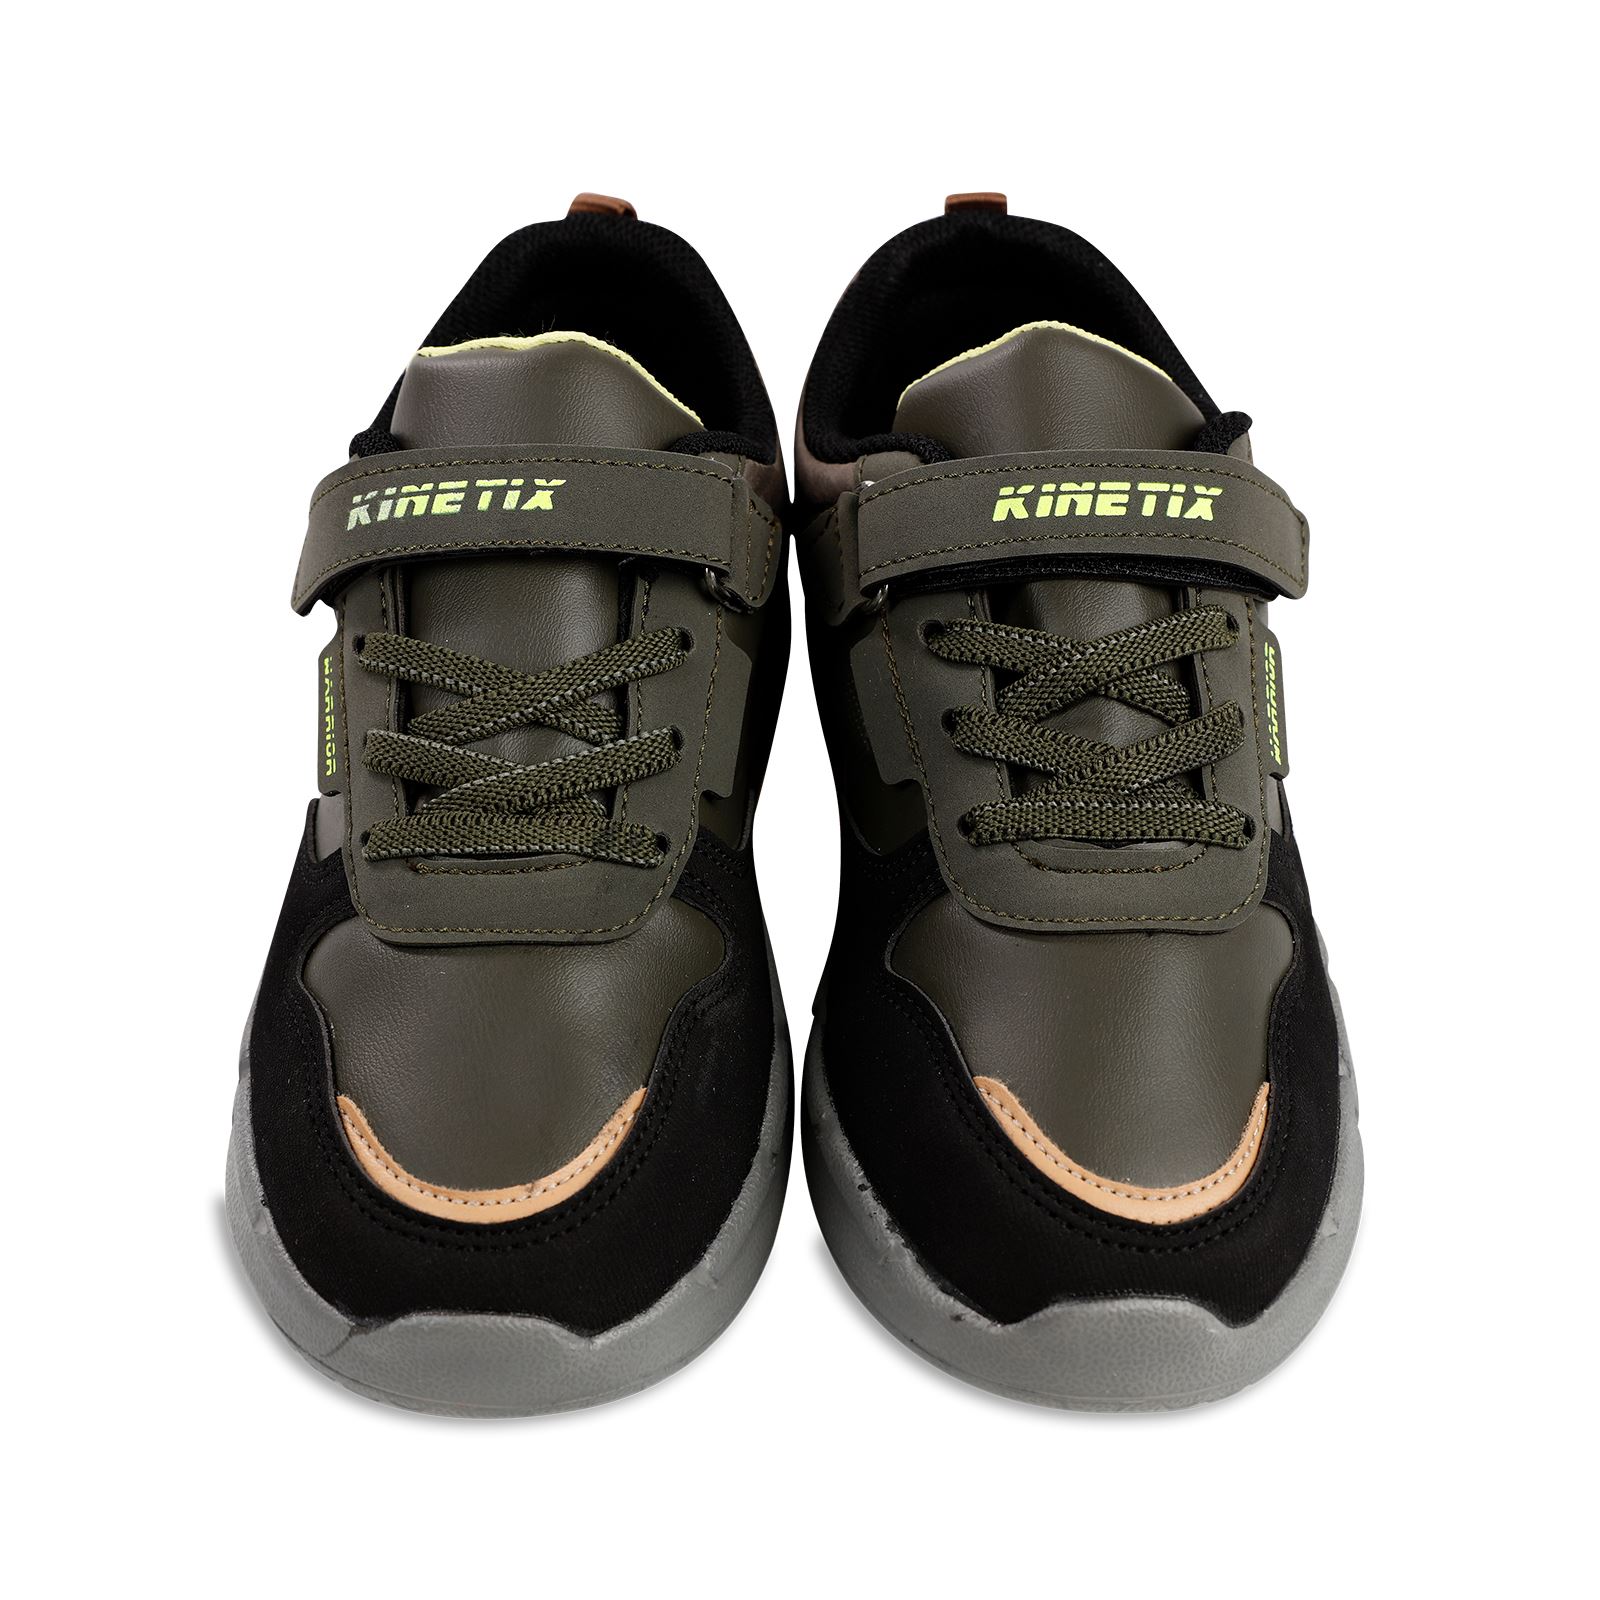 Kinetix Erkek Çocuk Spor Ayakkabı 31-35 Numara Haki